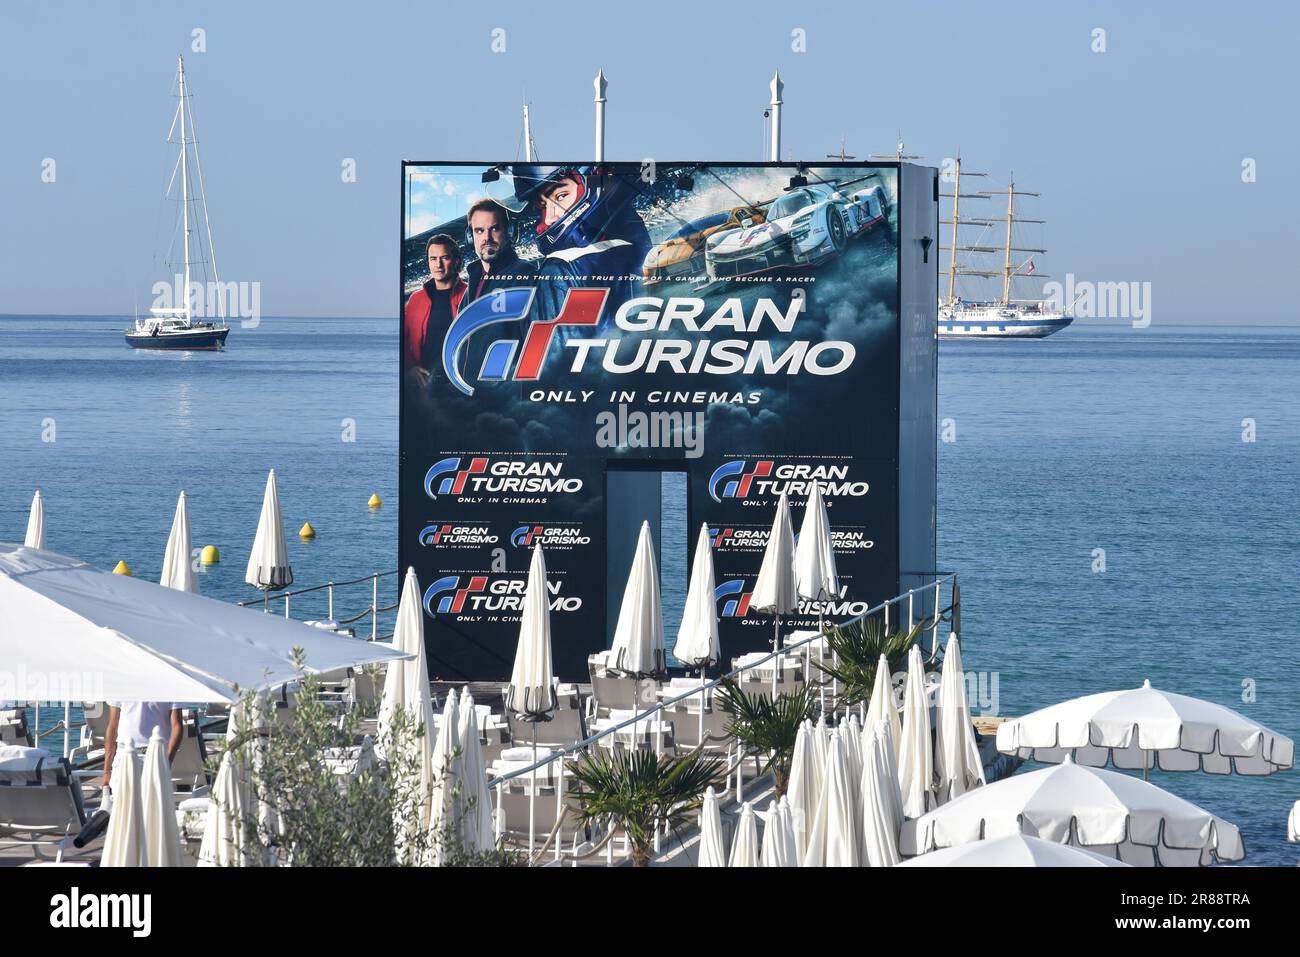 Francia, costa azzurra, Cannes, poster pubblicitario per il film Gran Turismo, adattamento di videogiochi in cui un adolescente vuole diventare pilota di corse. Foto Stock